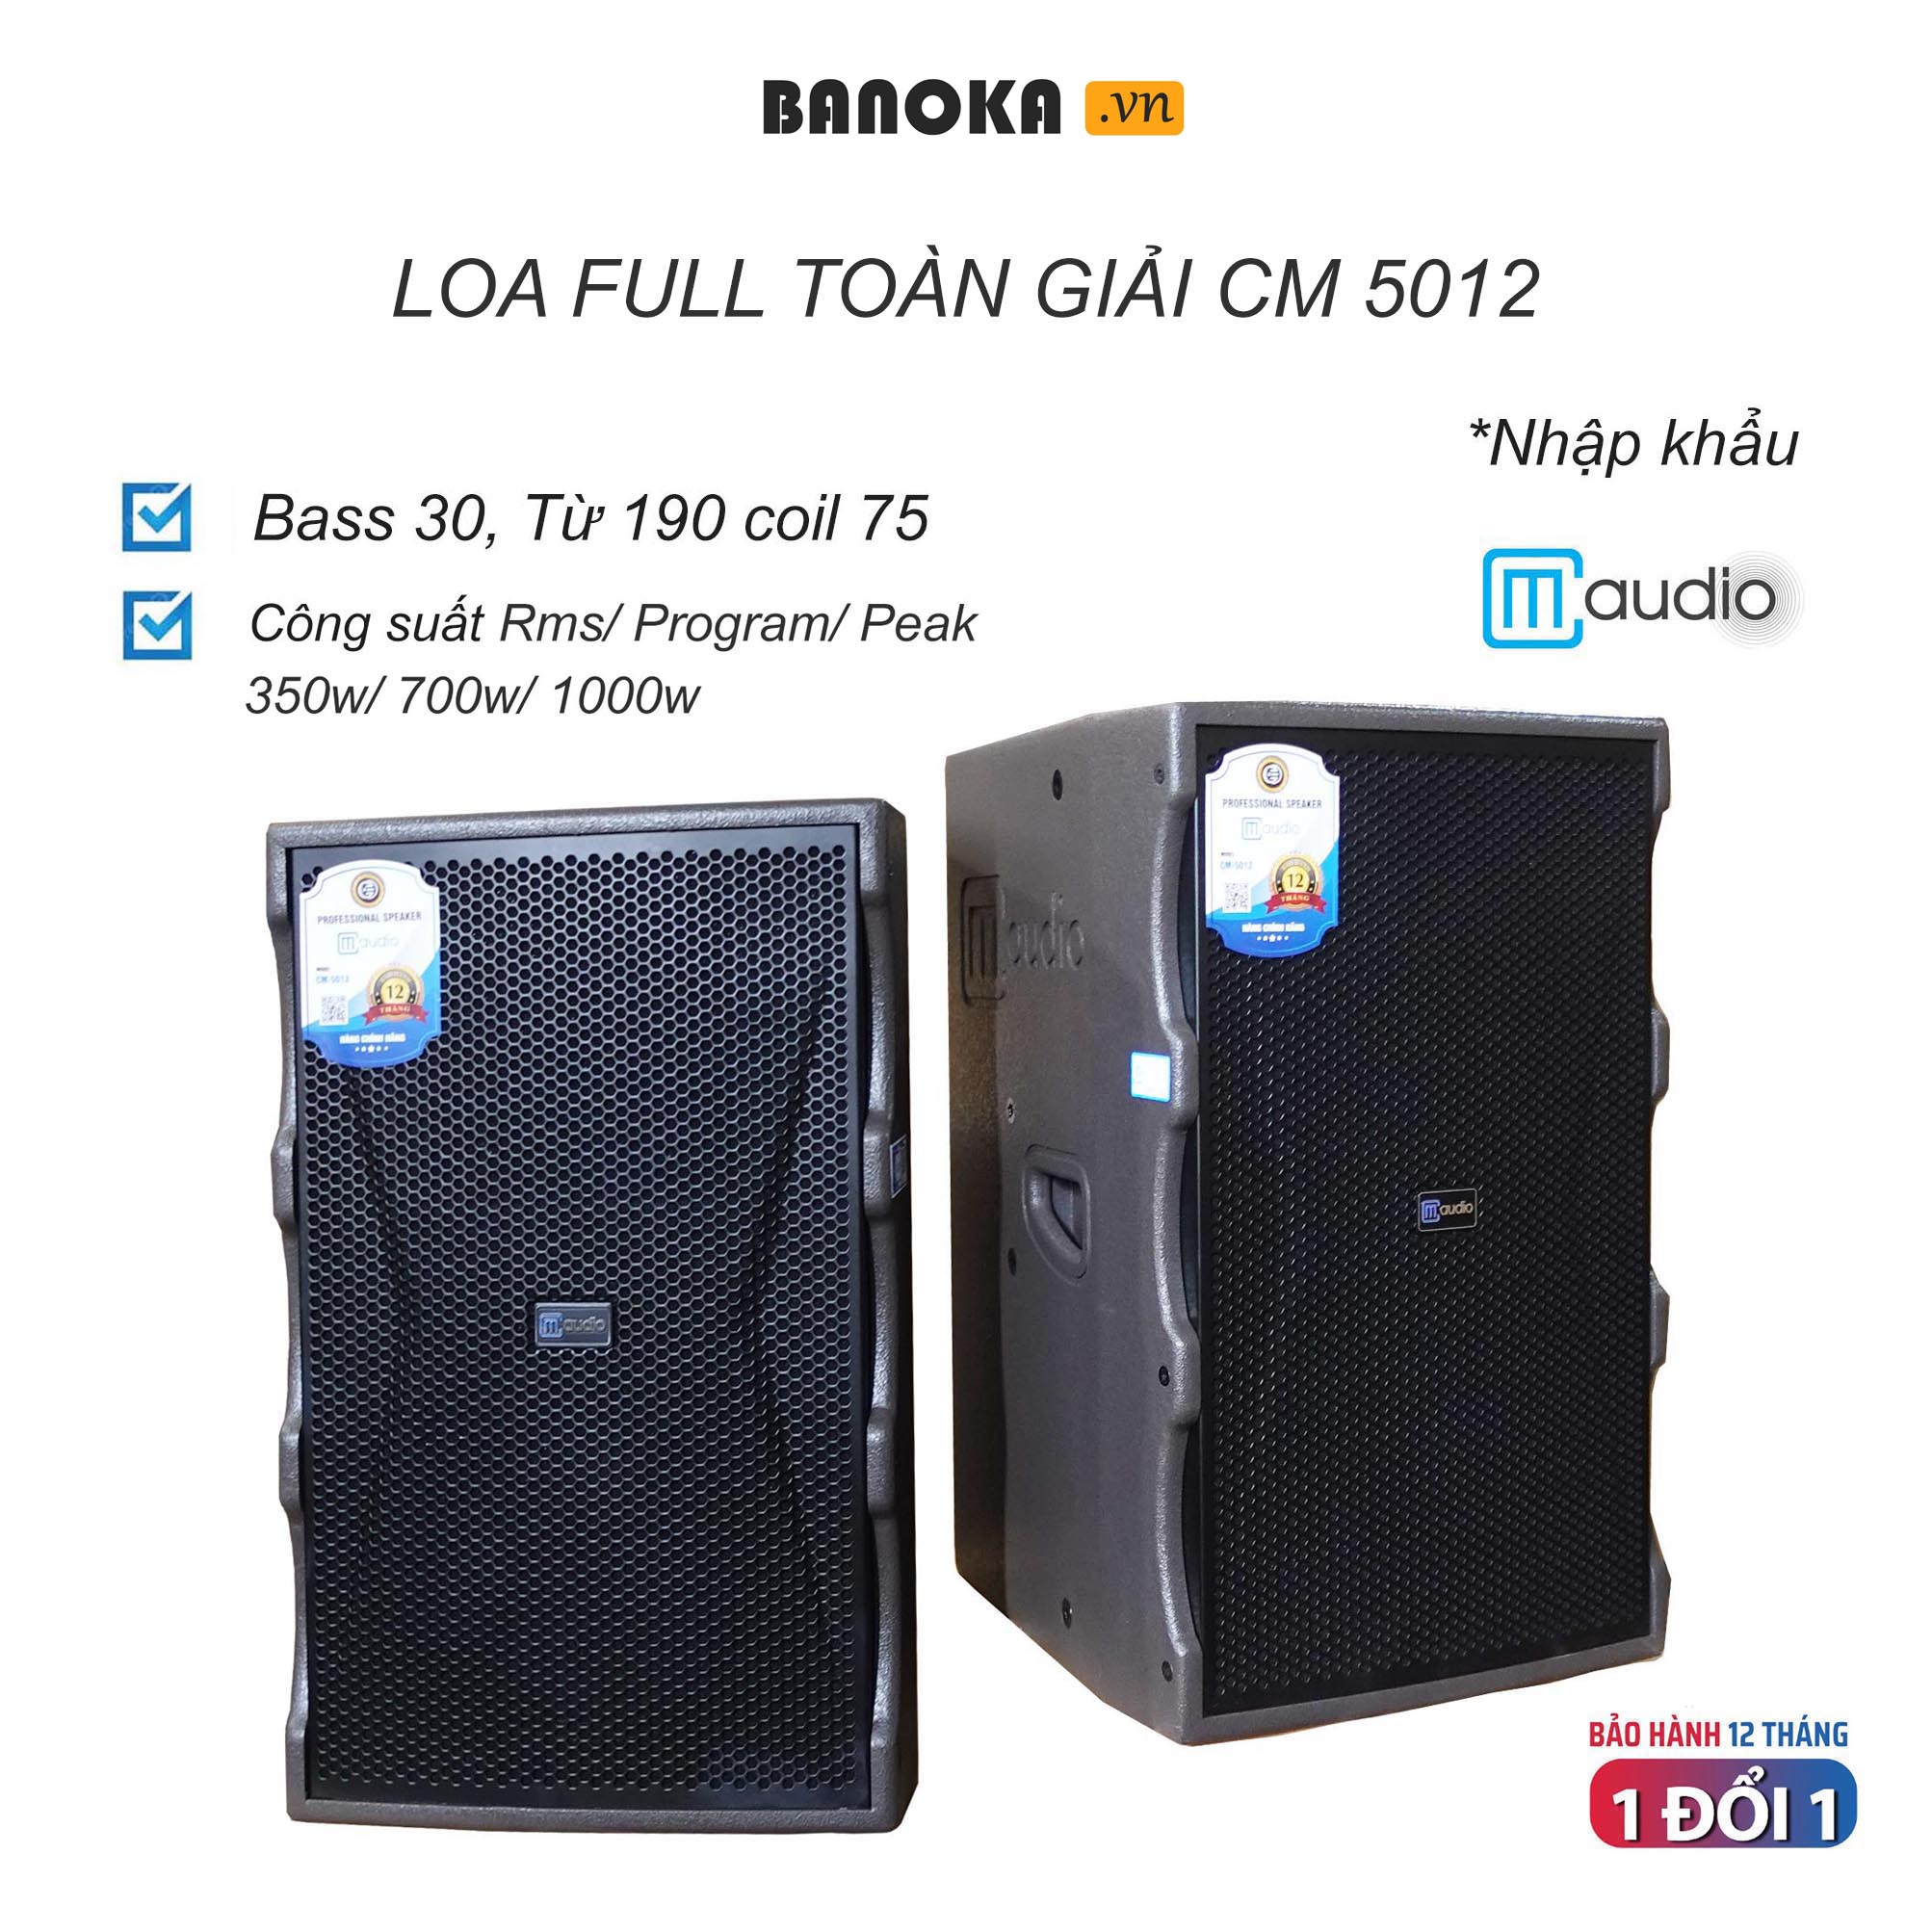 [Nhập khẩu] Loa Full Toàn Giải cao cấp CM 5012 Bass 30, Từ 190 coil 75 độ nhạy 100 dB - Bảo hành 12 tháng